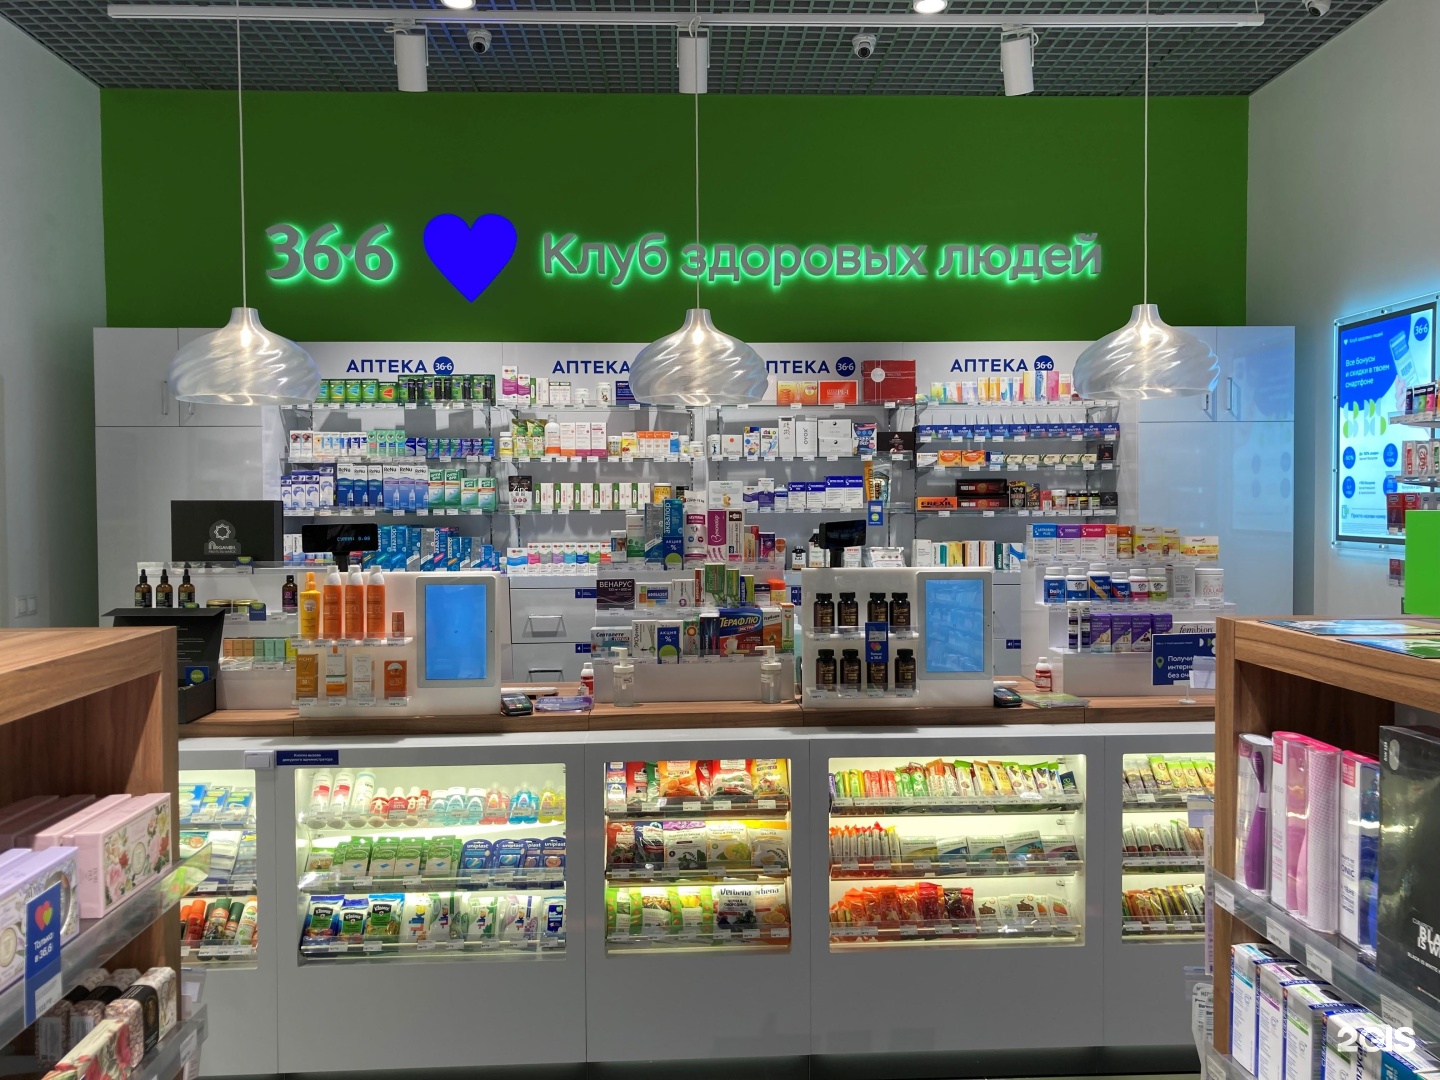 Аптека 36 6 Кутузовский Проспект